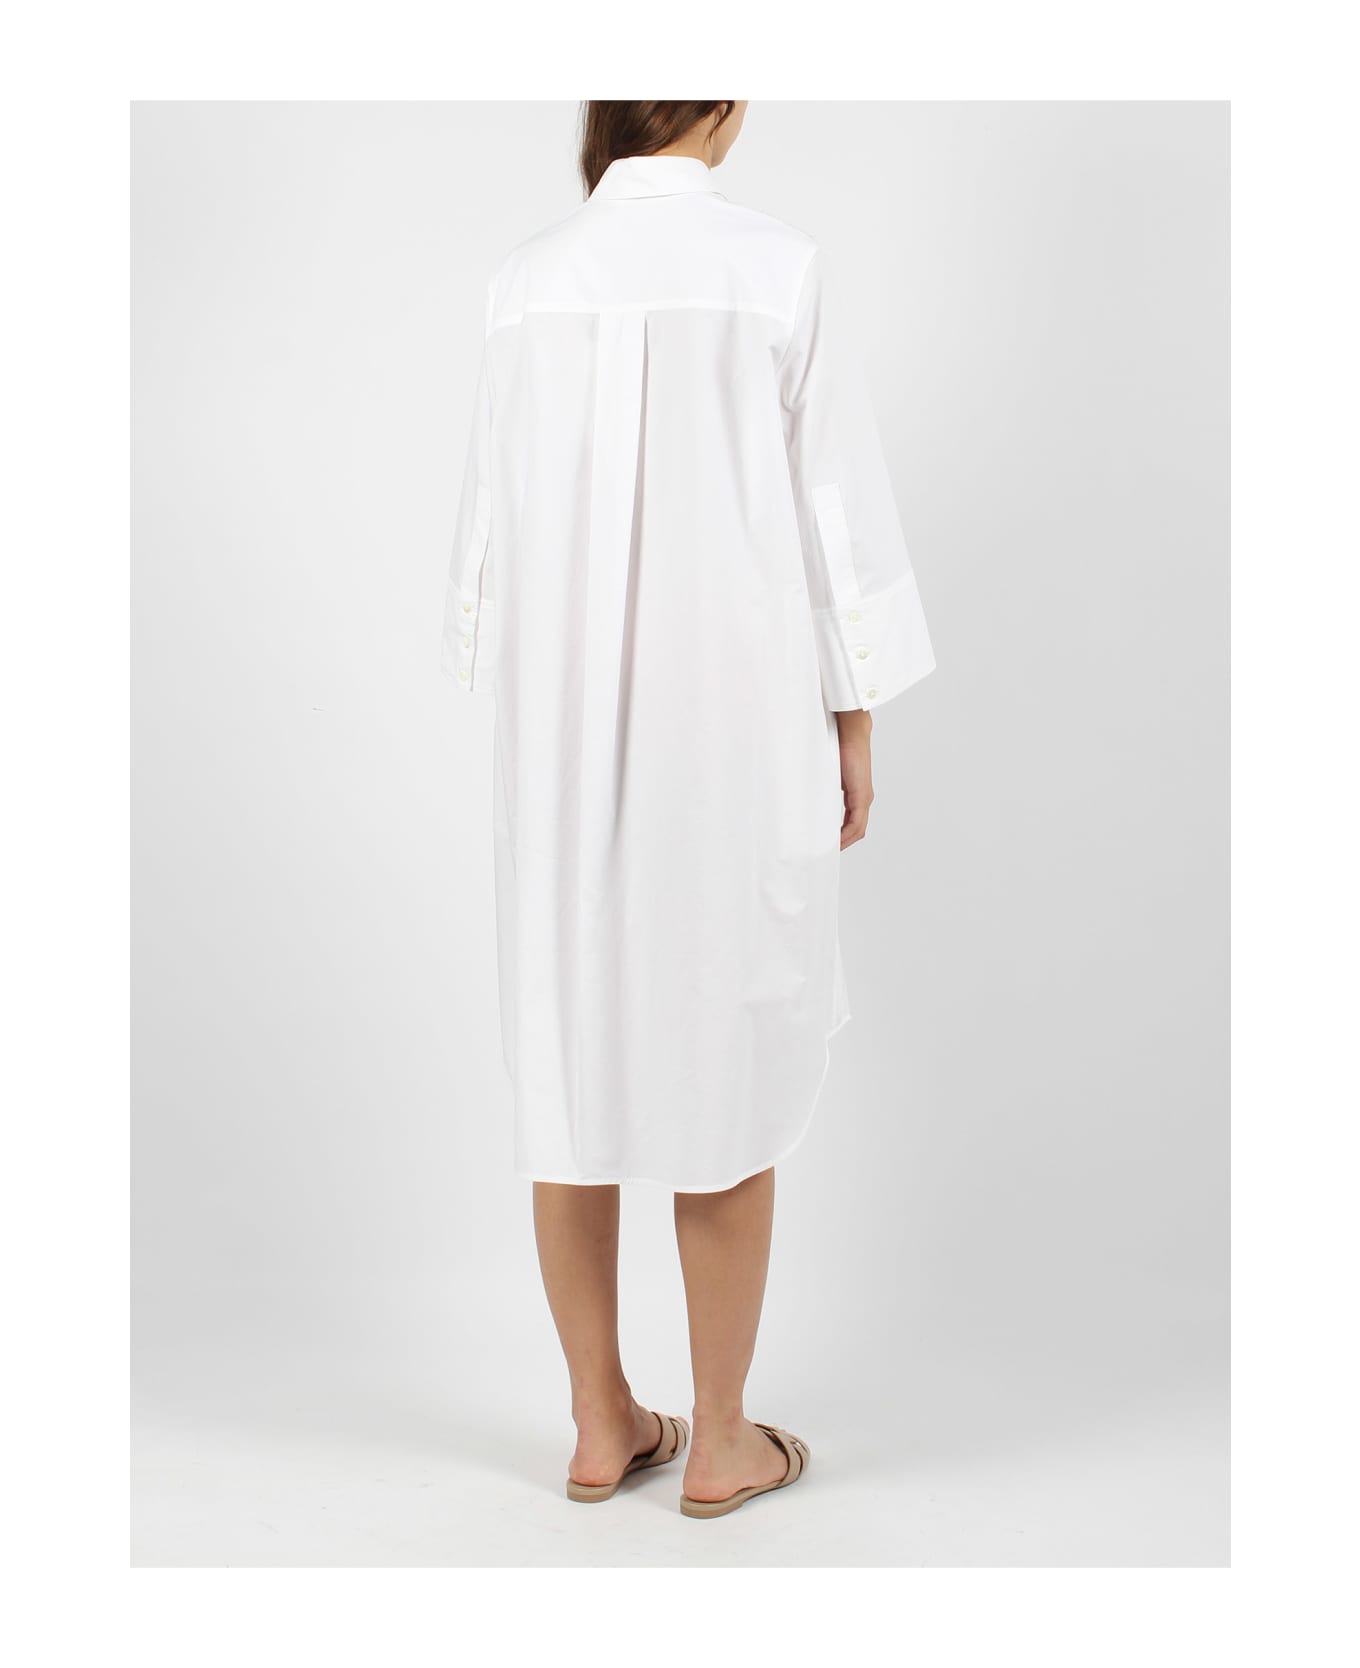 Parosh Canyox Lace Embroidery Shirt Dress - White